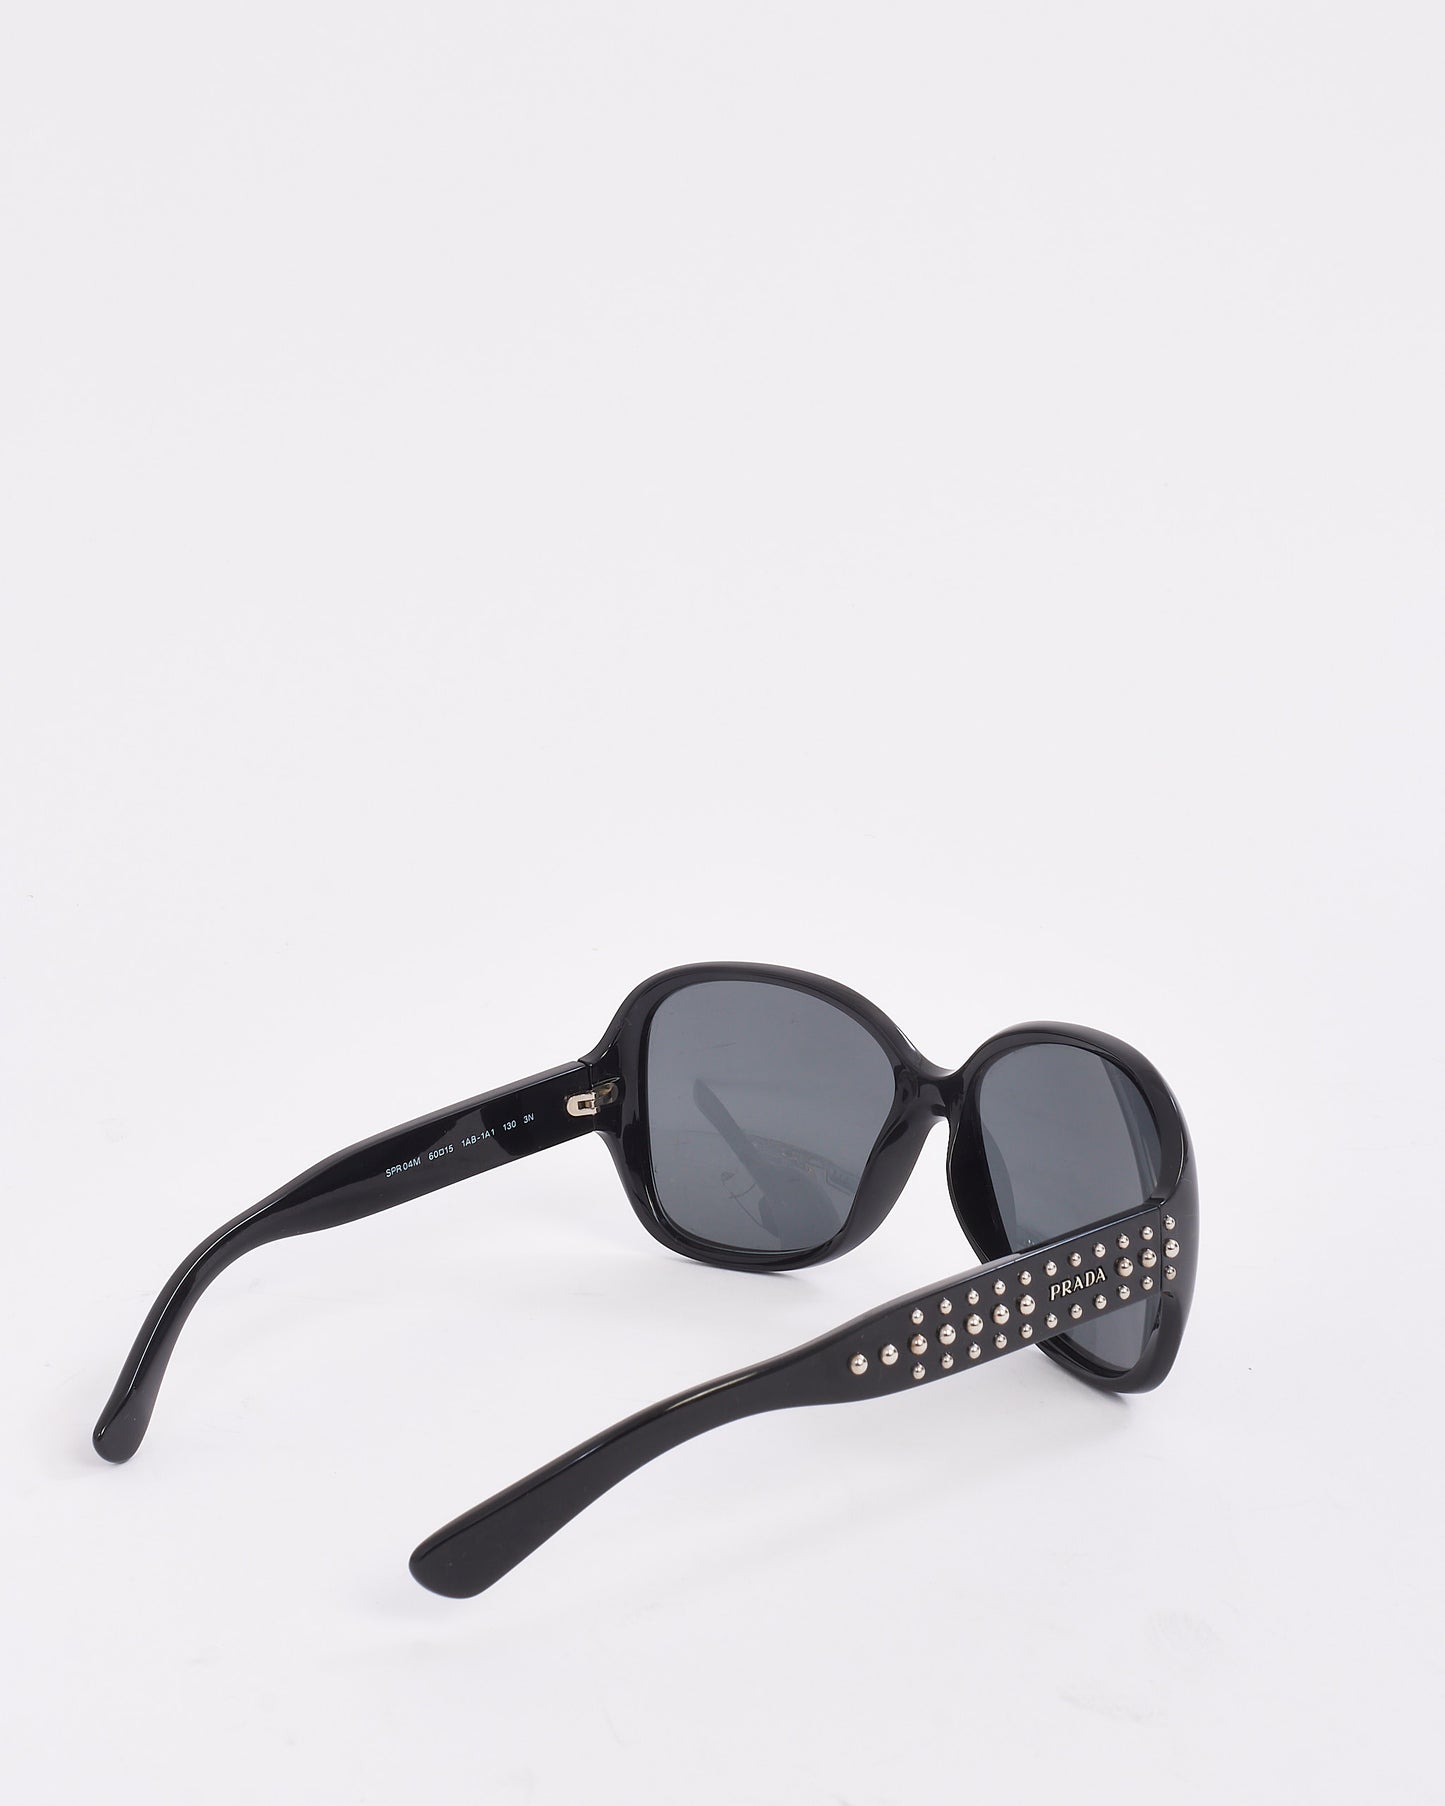 Prada Black Square Studded Arm SPR04M Sunglasses